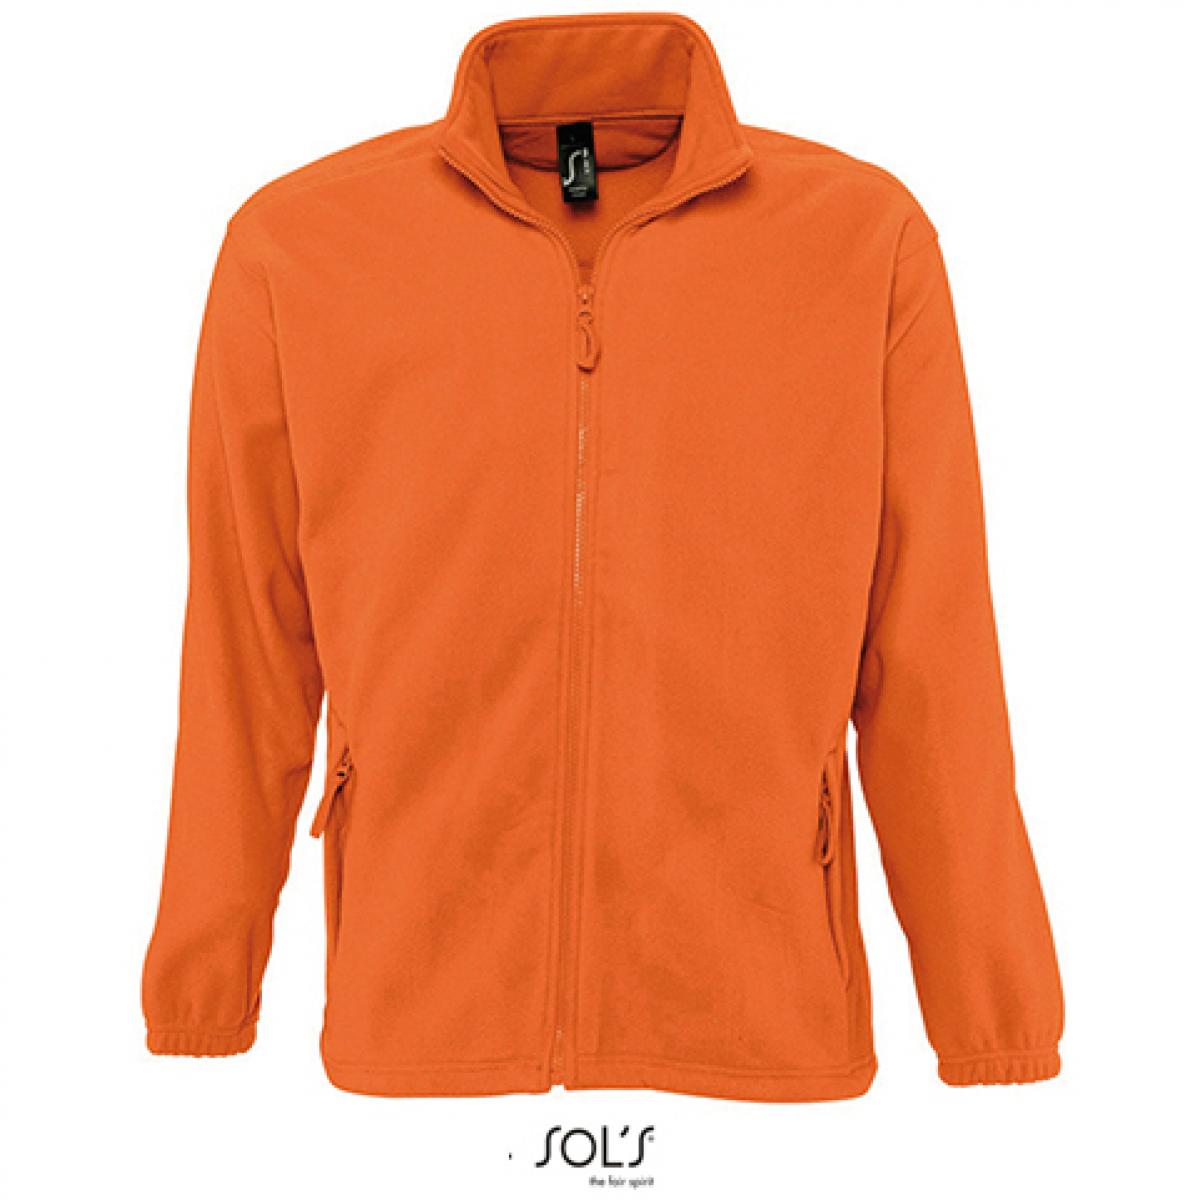 Hersteller: SOLs Herstellernummer: 55000 Artikelbezeichnung: Fleecejacket North / Herren Jacke bis 5XL Farbe: Orange